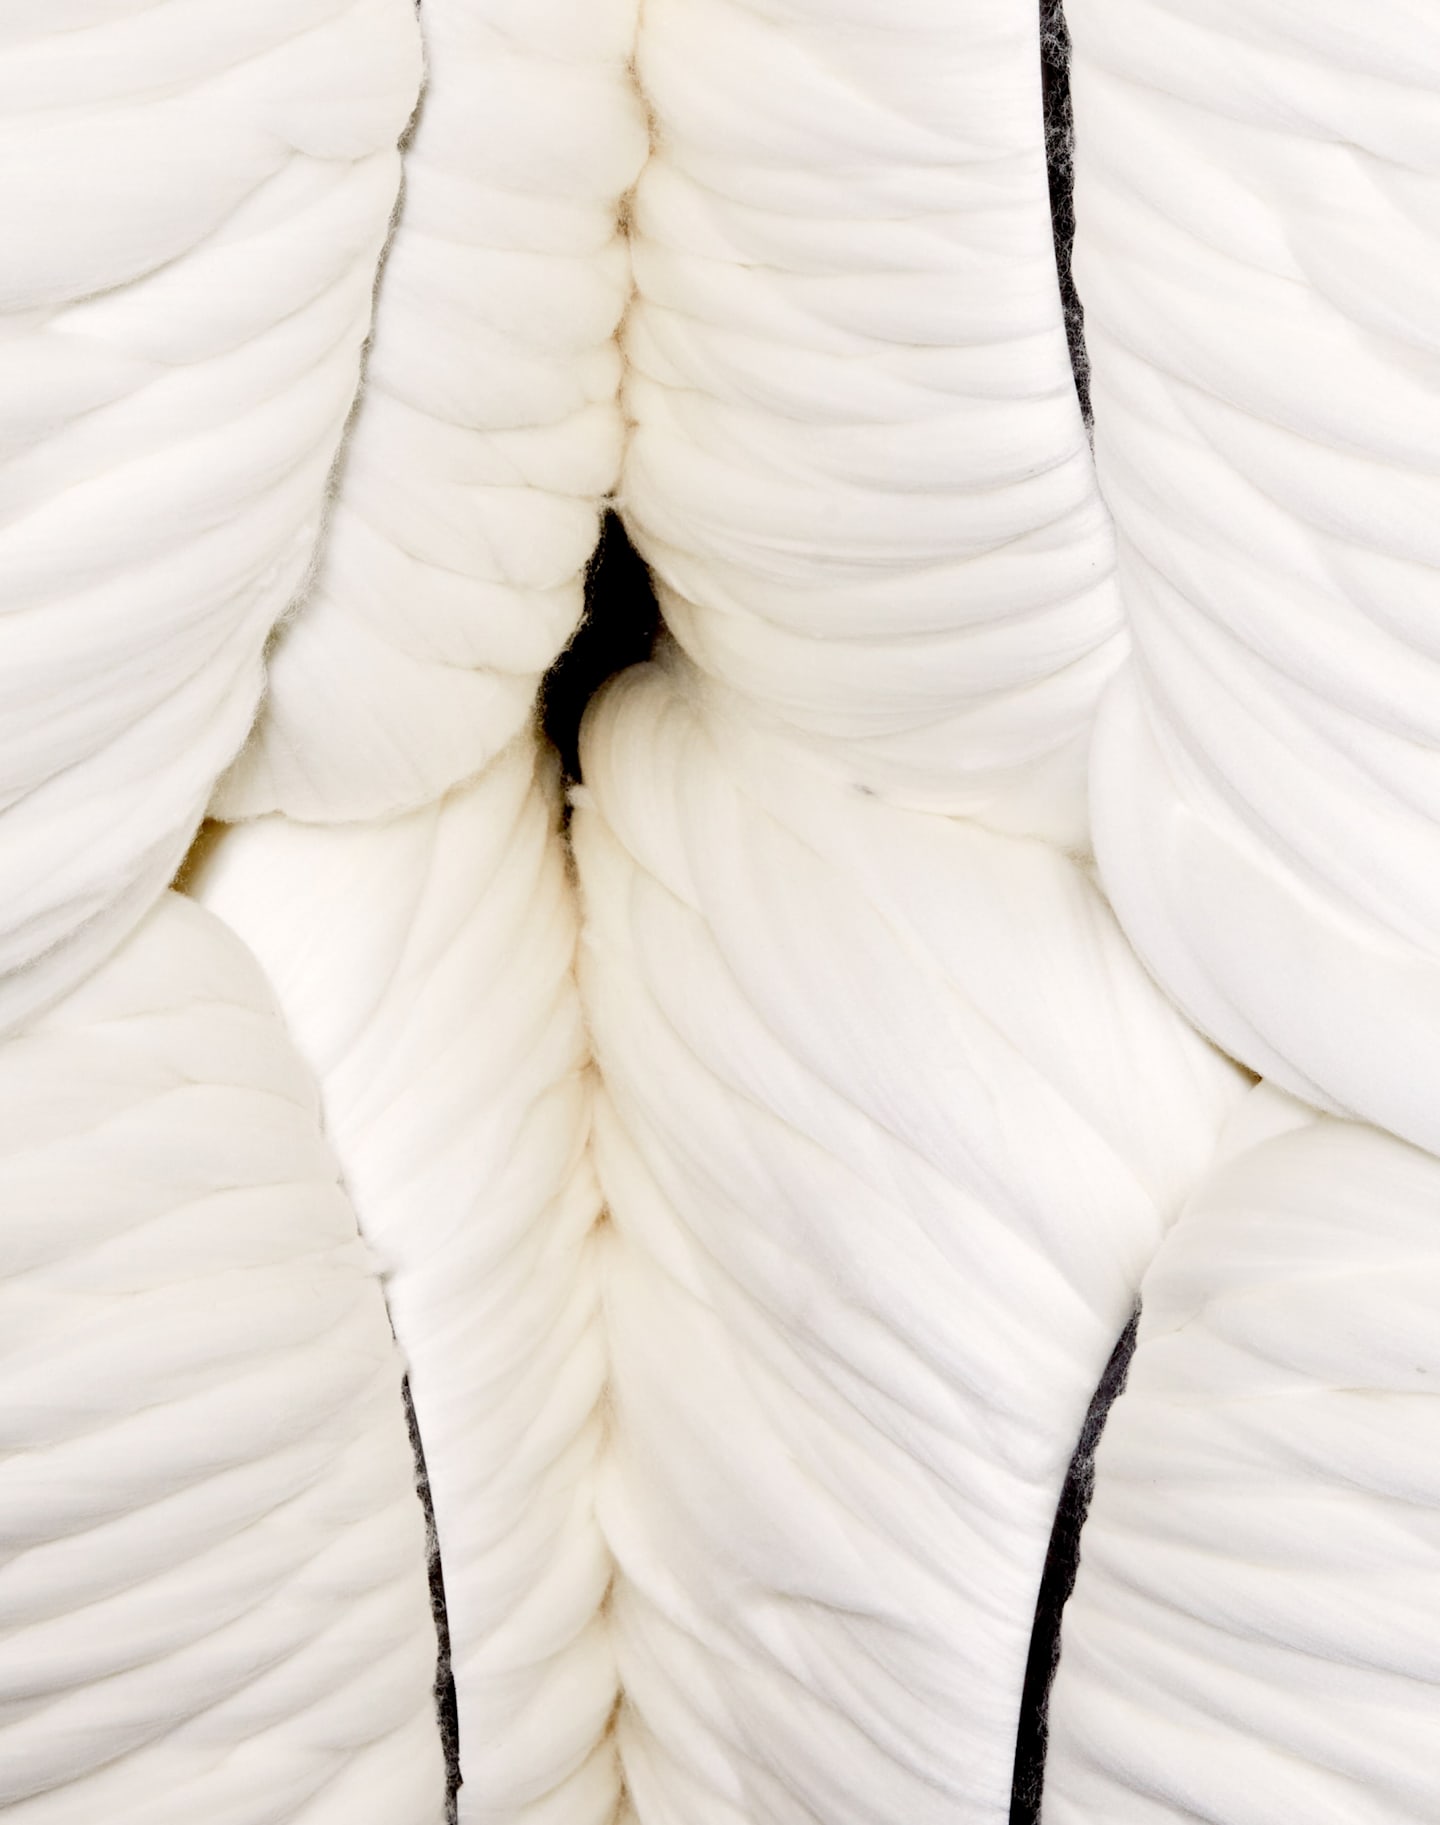 Imagen que exhibe lana blanca virgen, antes del proceso de hilado. 